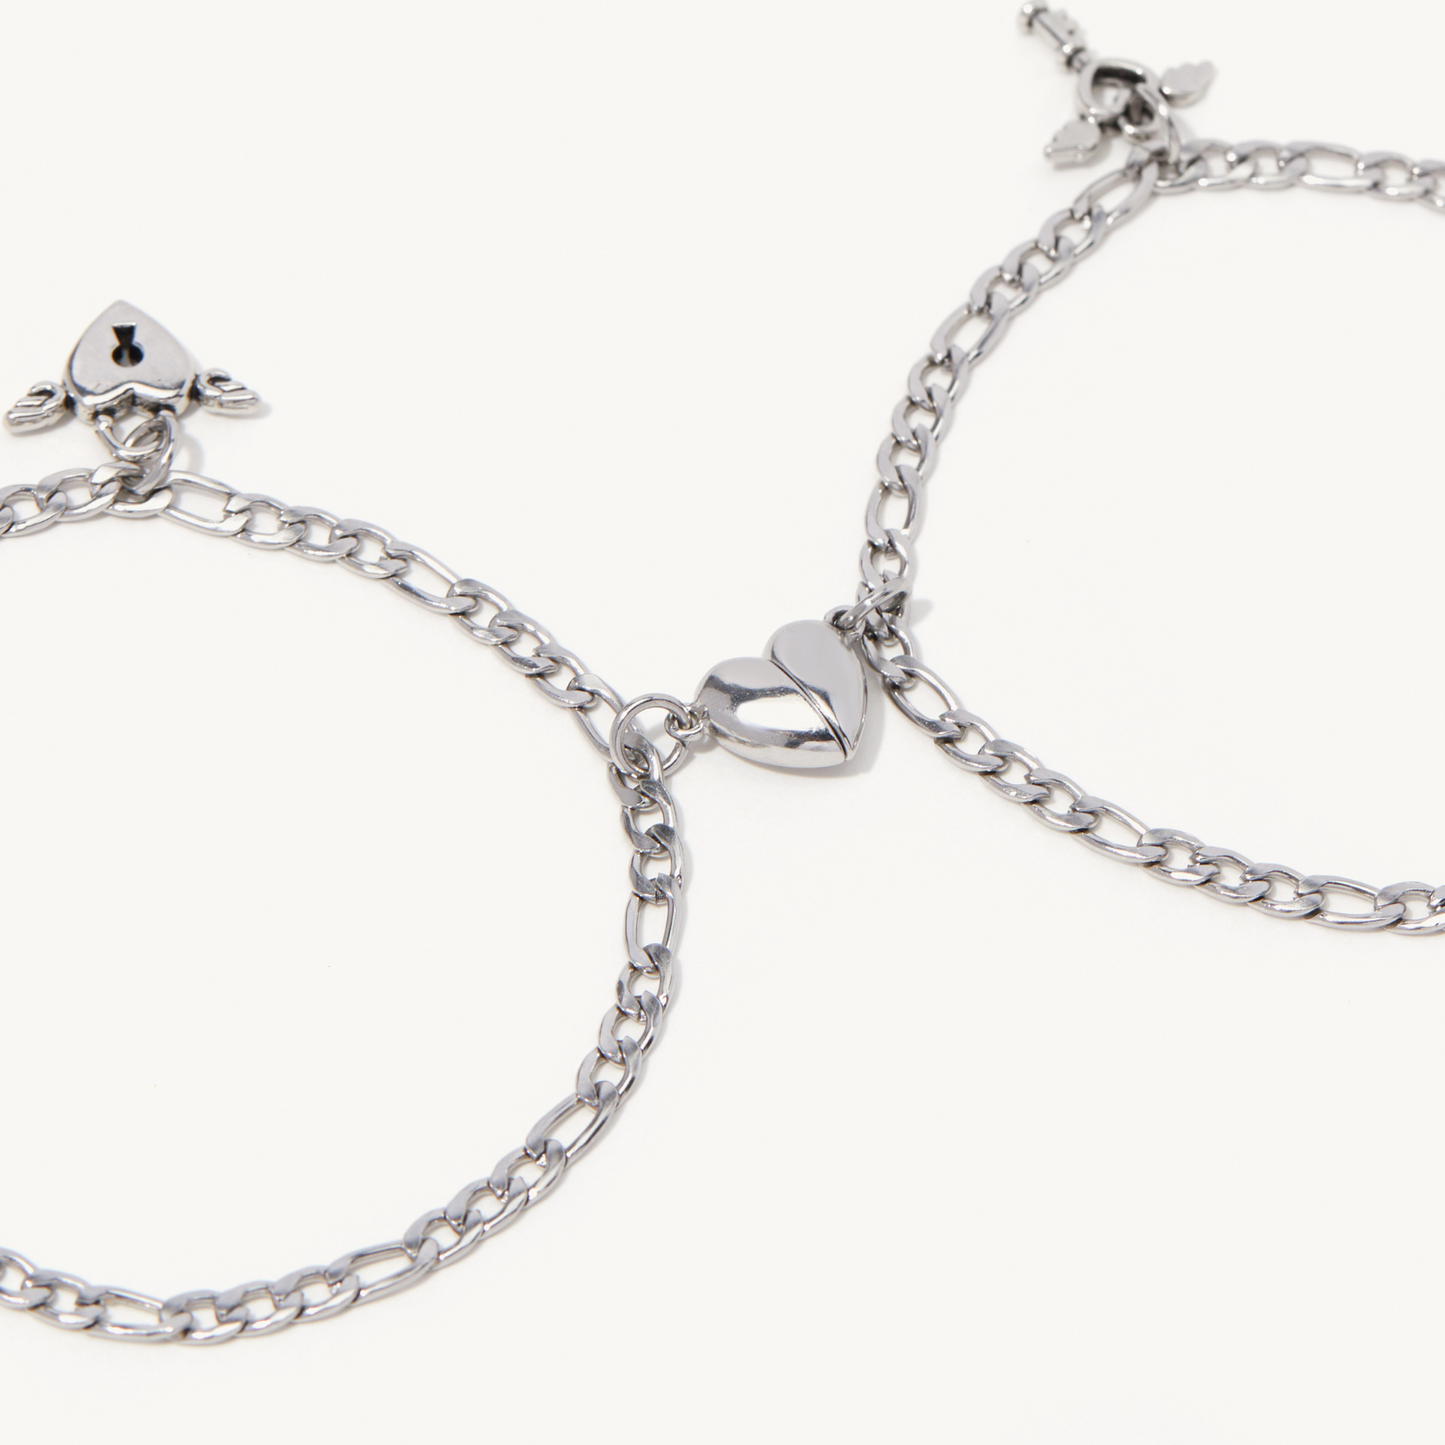 Magnetic Love Chain Bracelet Set